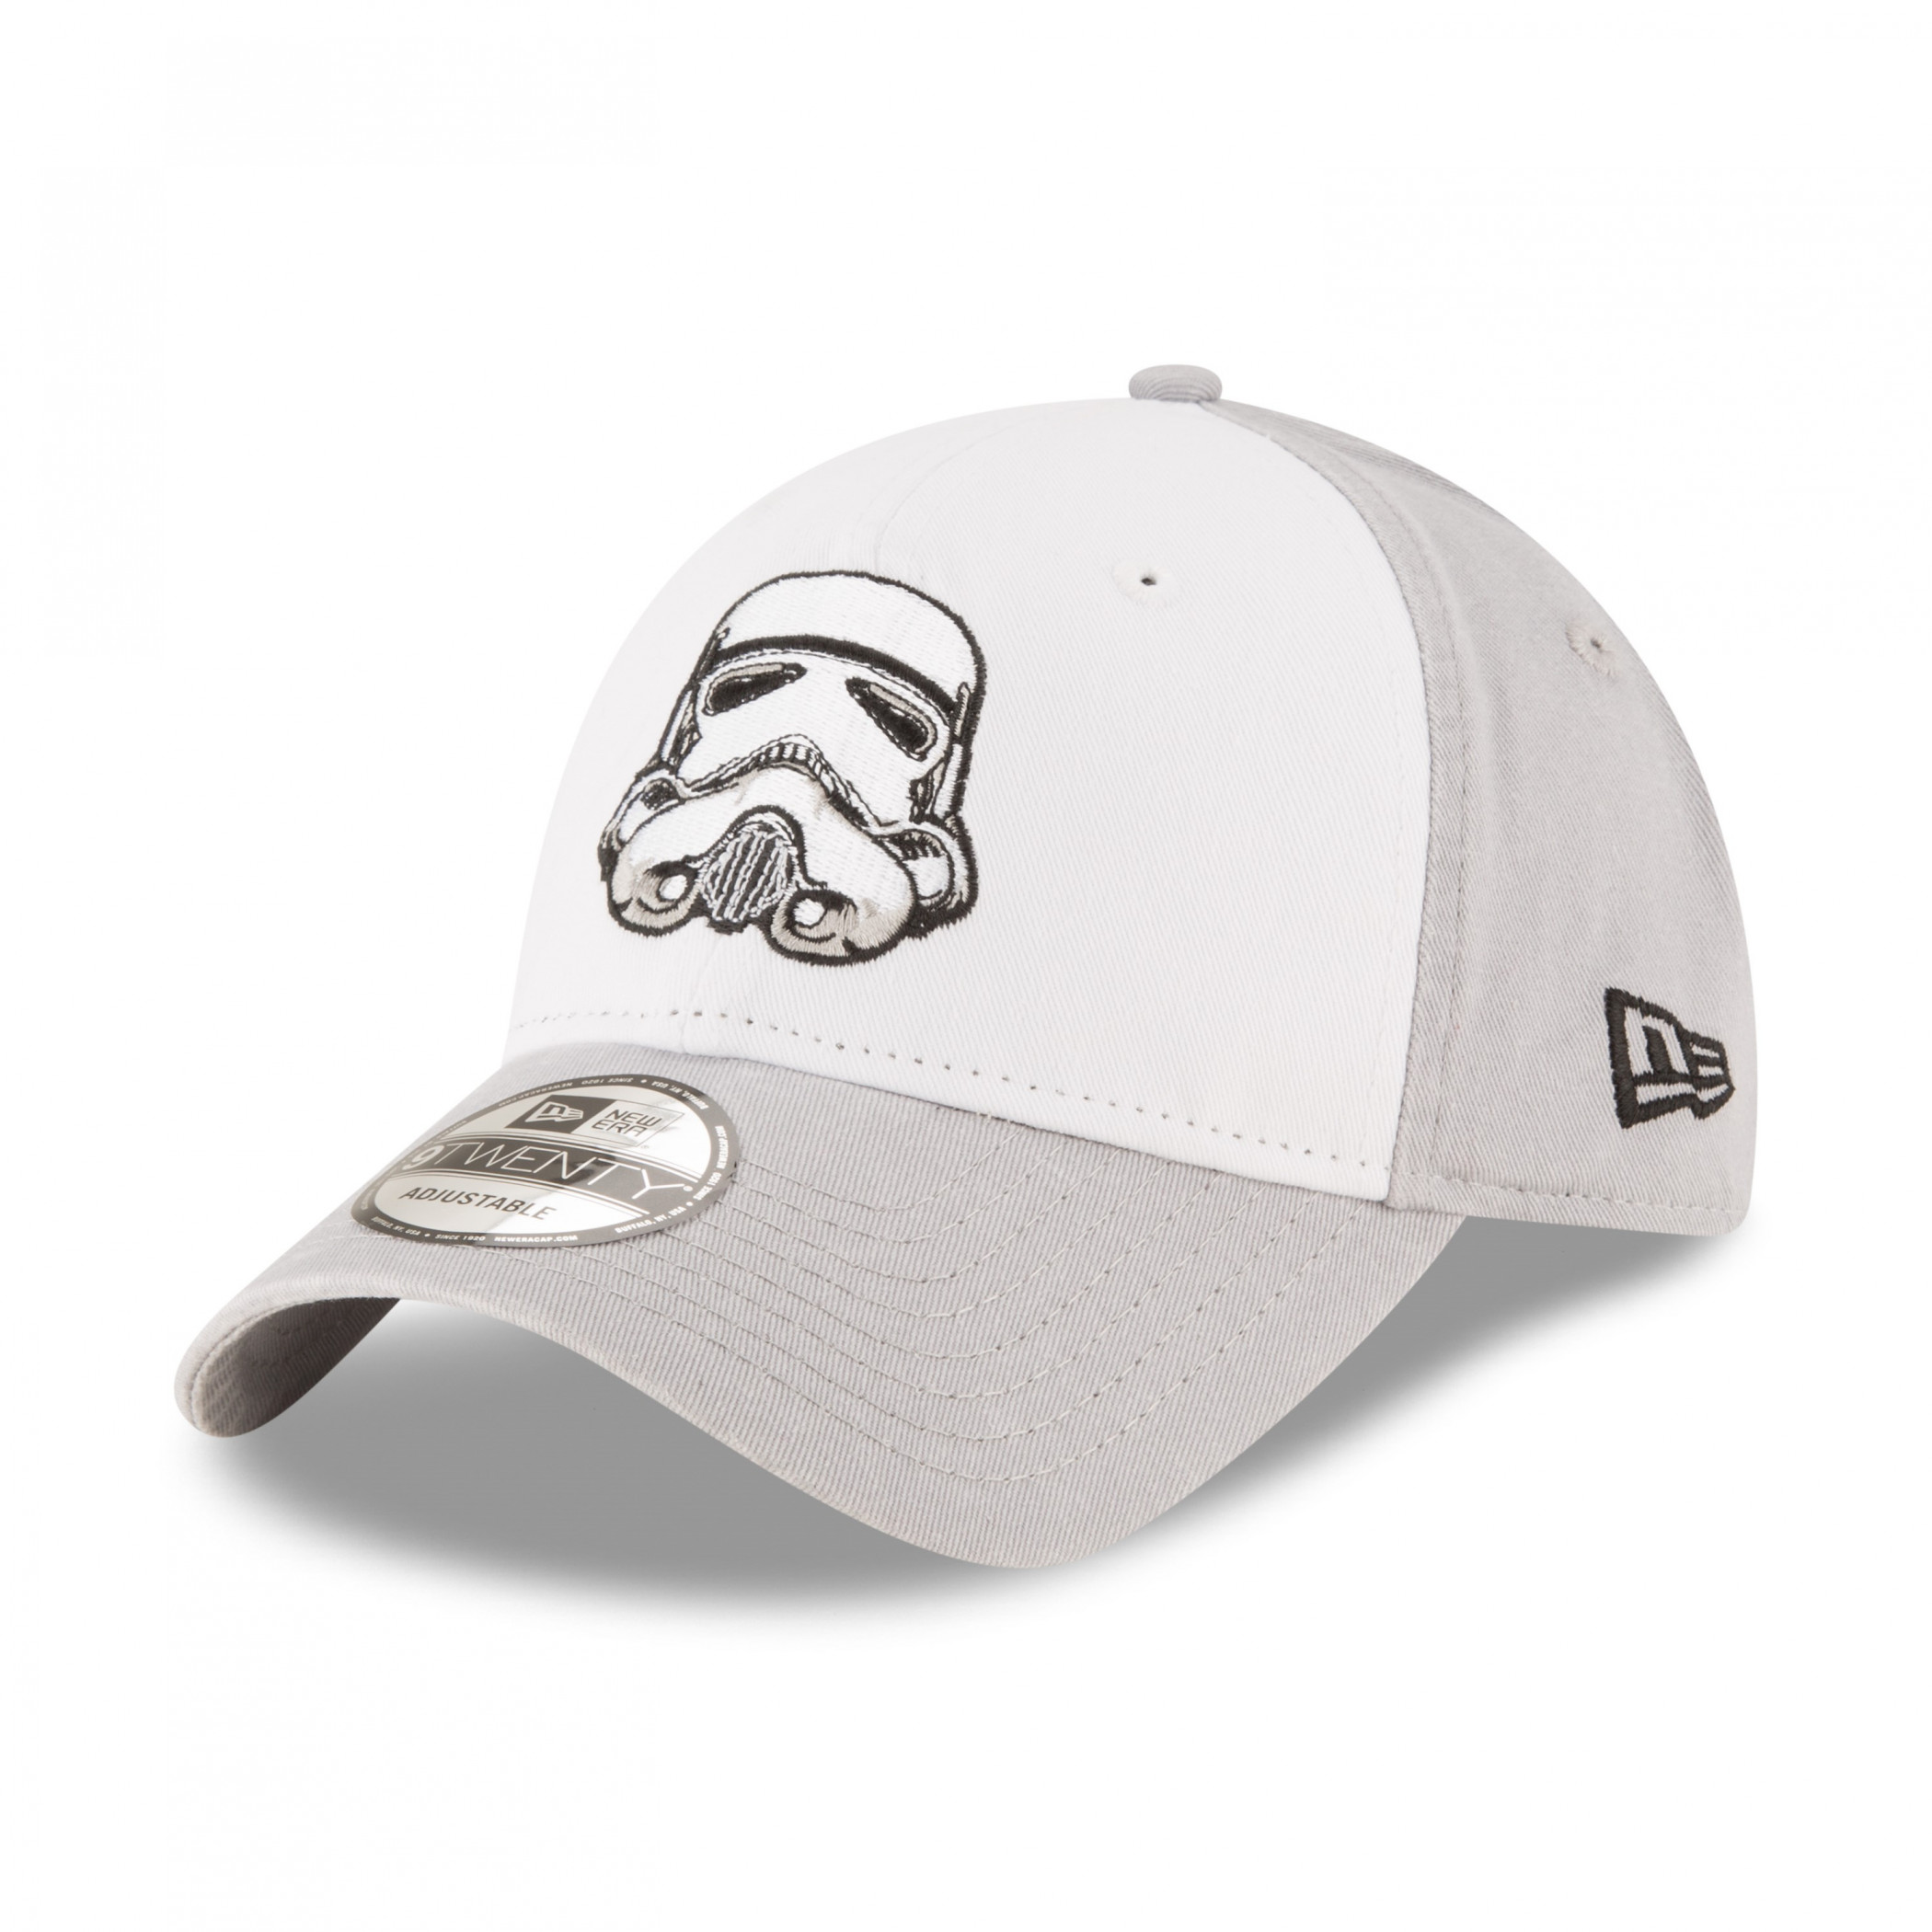 Star Wars Stormtrooper Helmet New Era 9Twenty Adjustable Hat